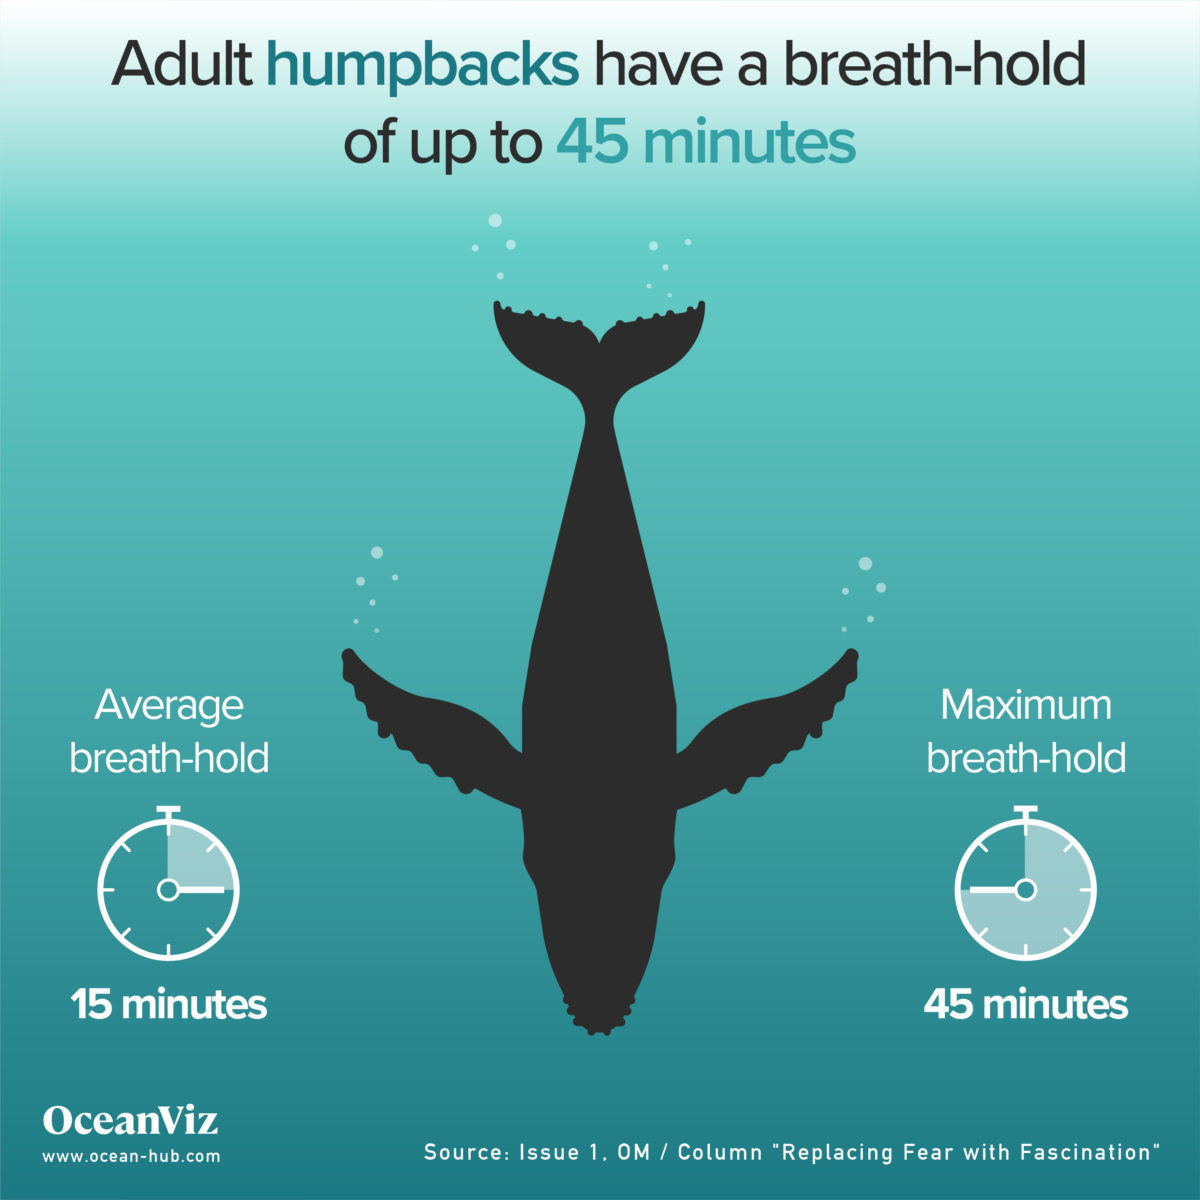 Adult humpbacks breath-hold